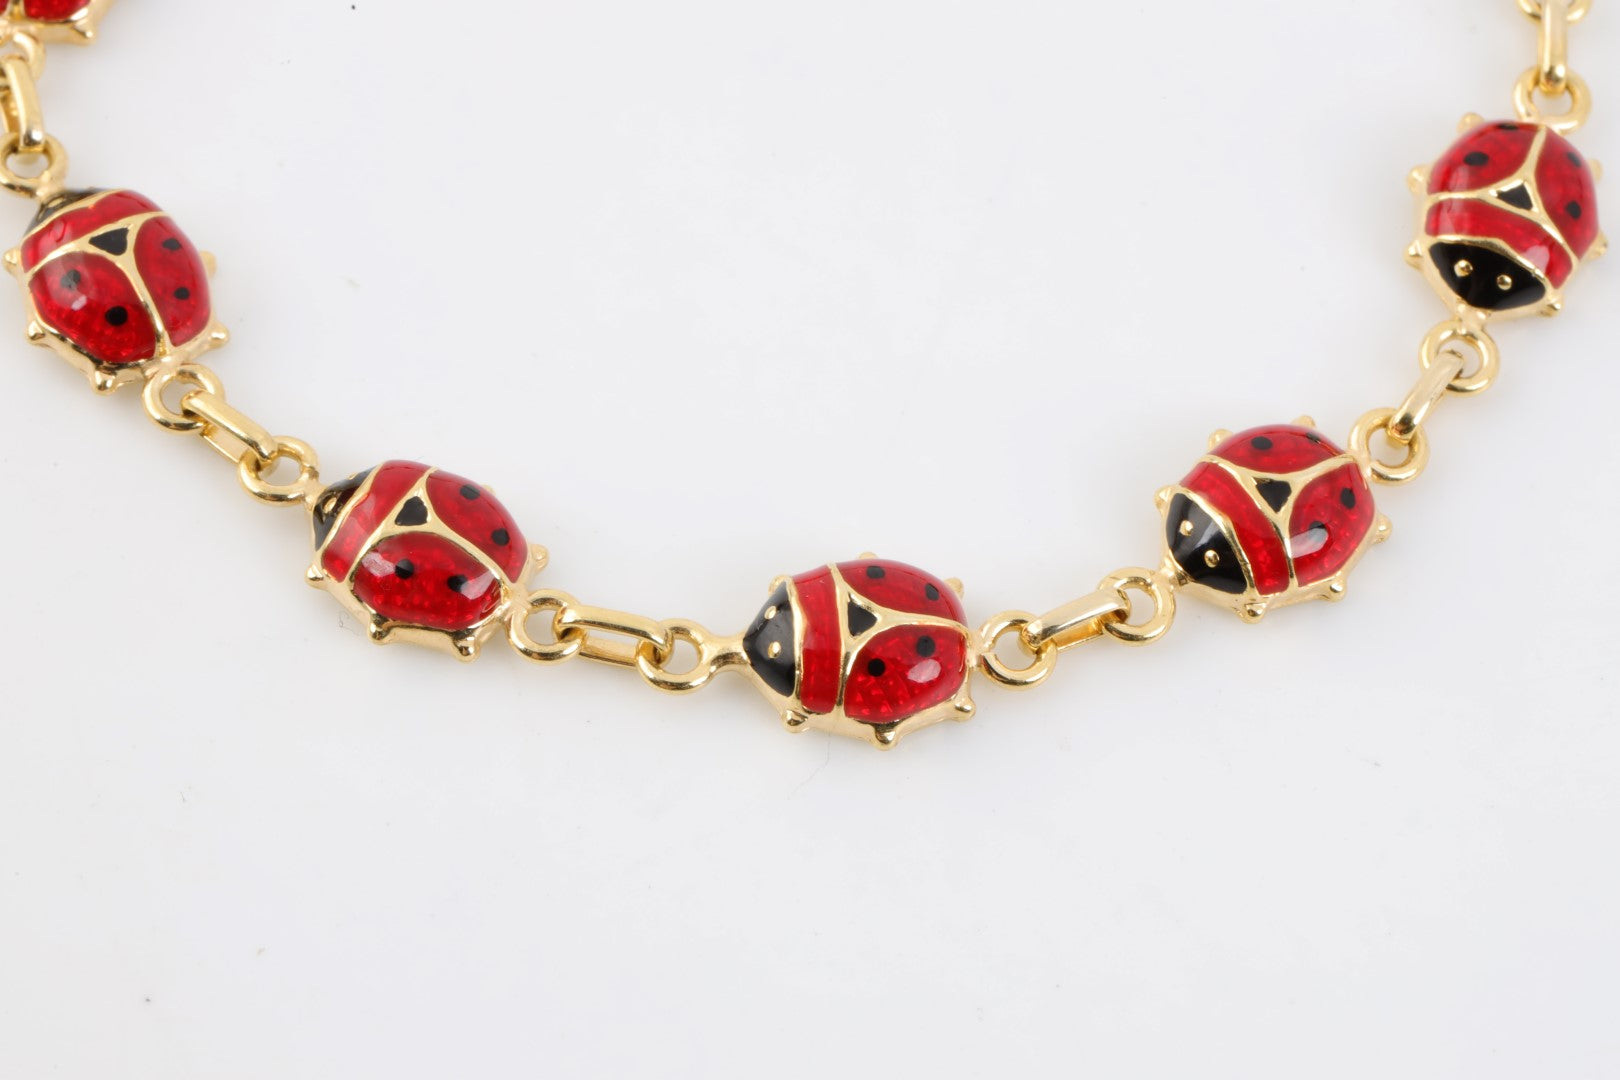 7 14k Yellow Gold Enamel Ladybug Bracelet (6.00g.) – Chorost & Co.